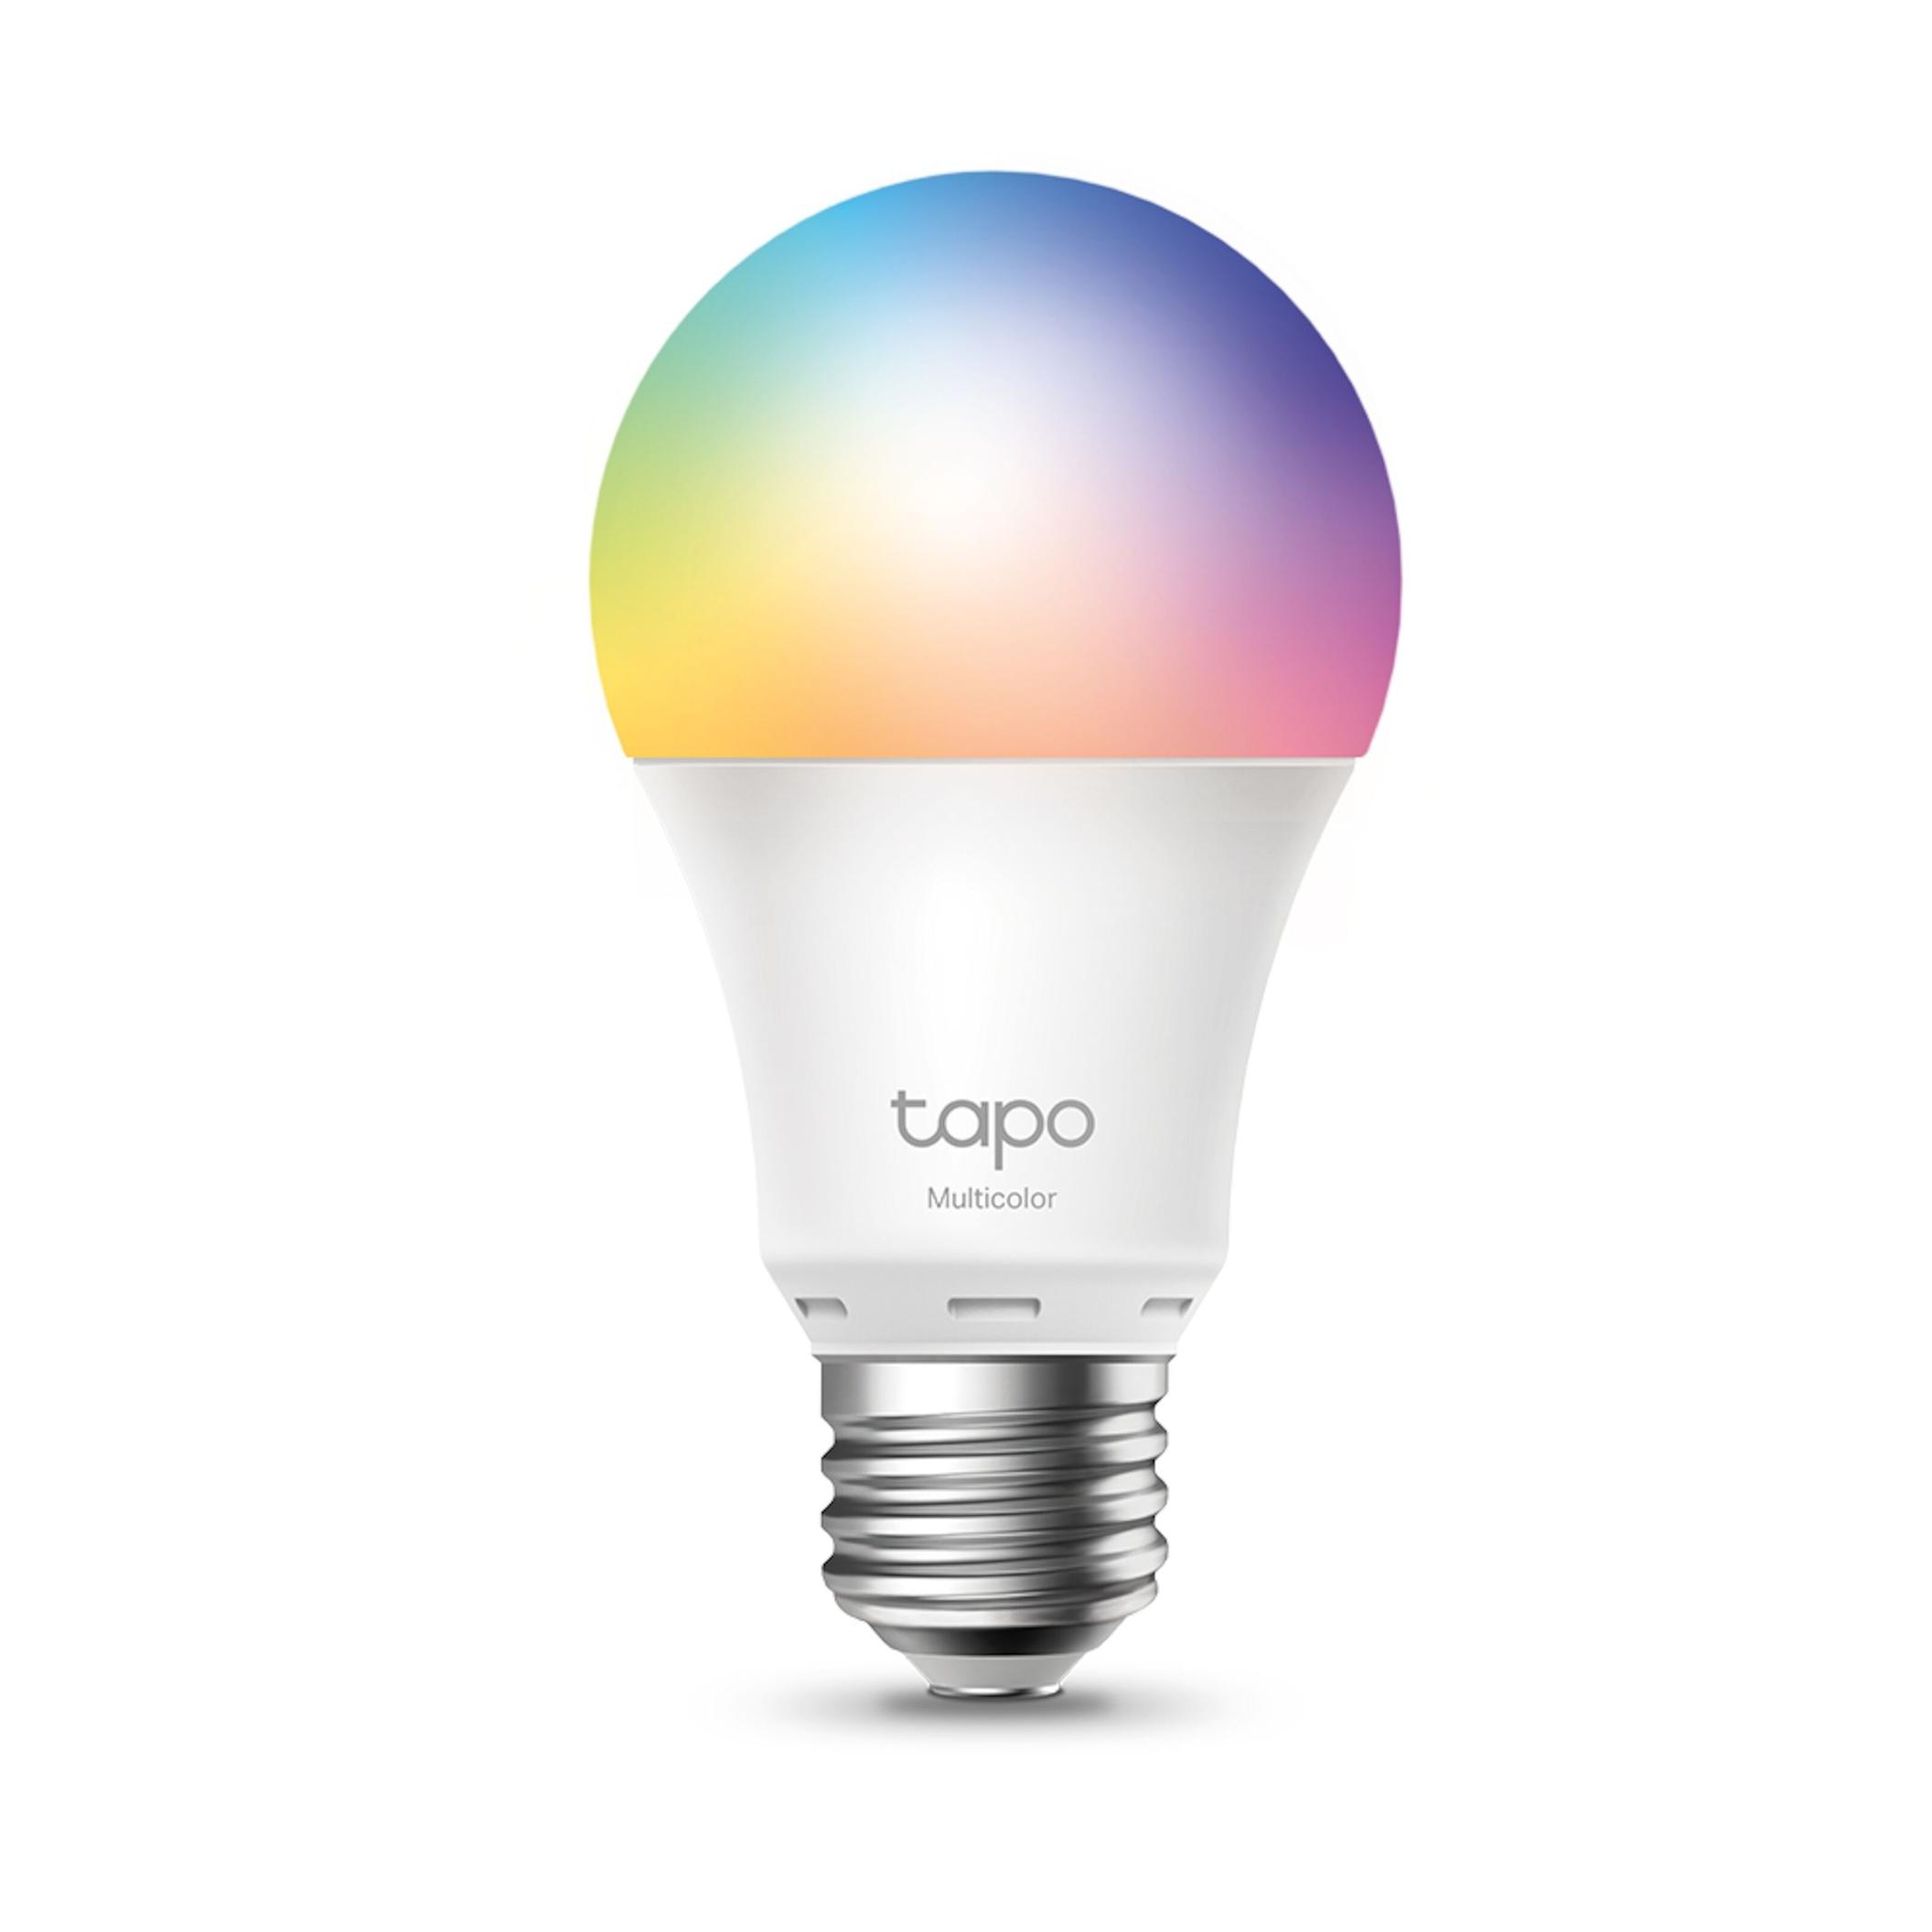 Tapo Smart RGB LED-lampa E27 för 199 kr på Kjell & Company